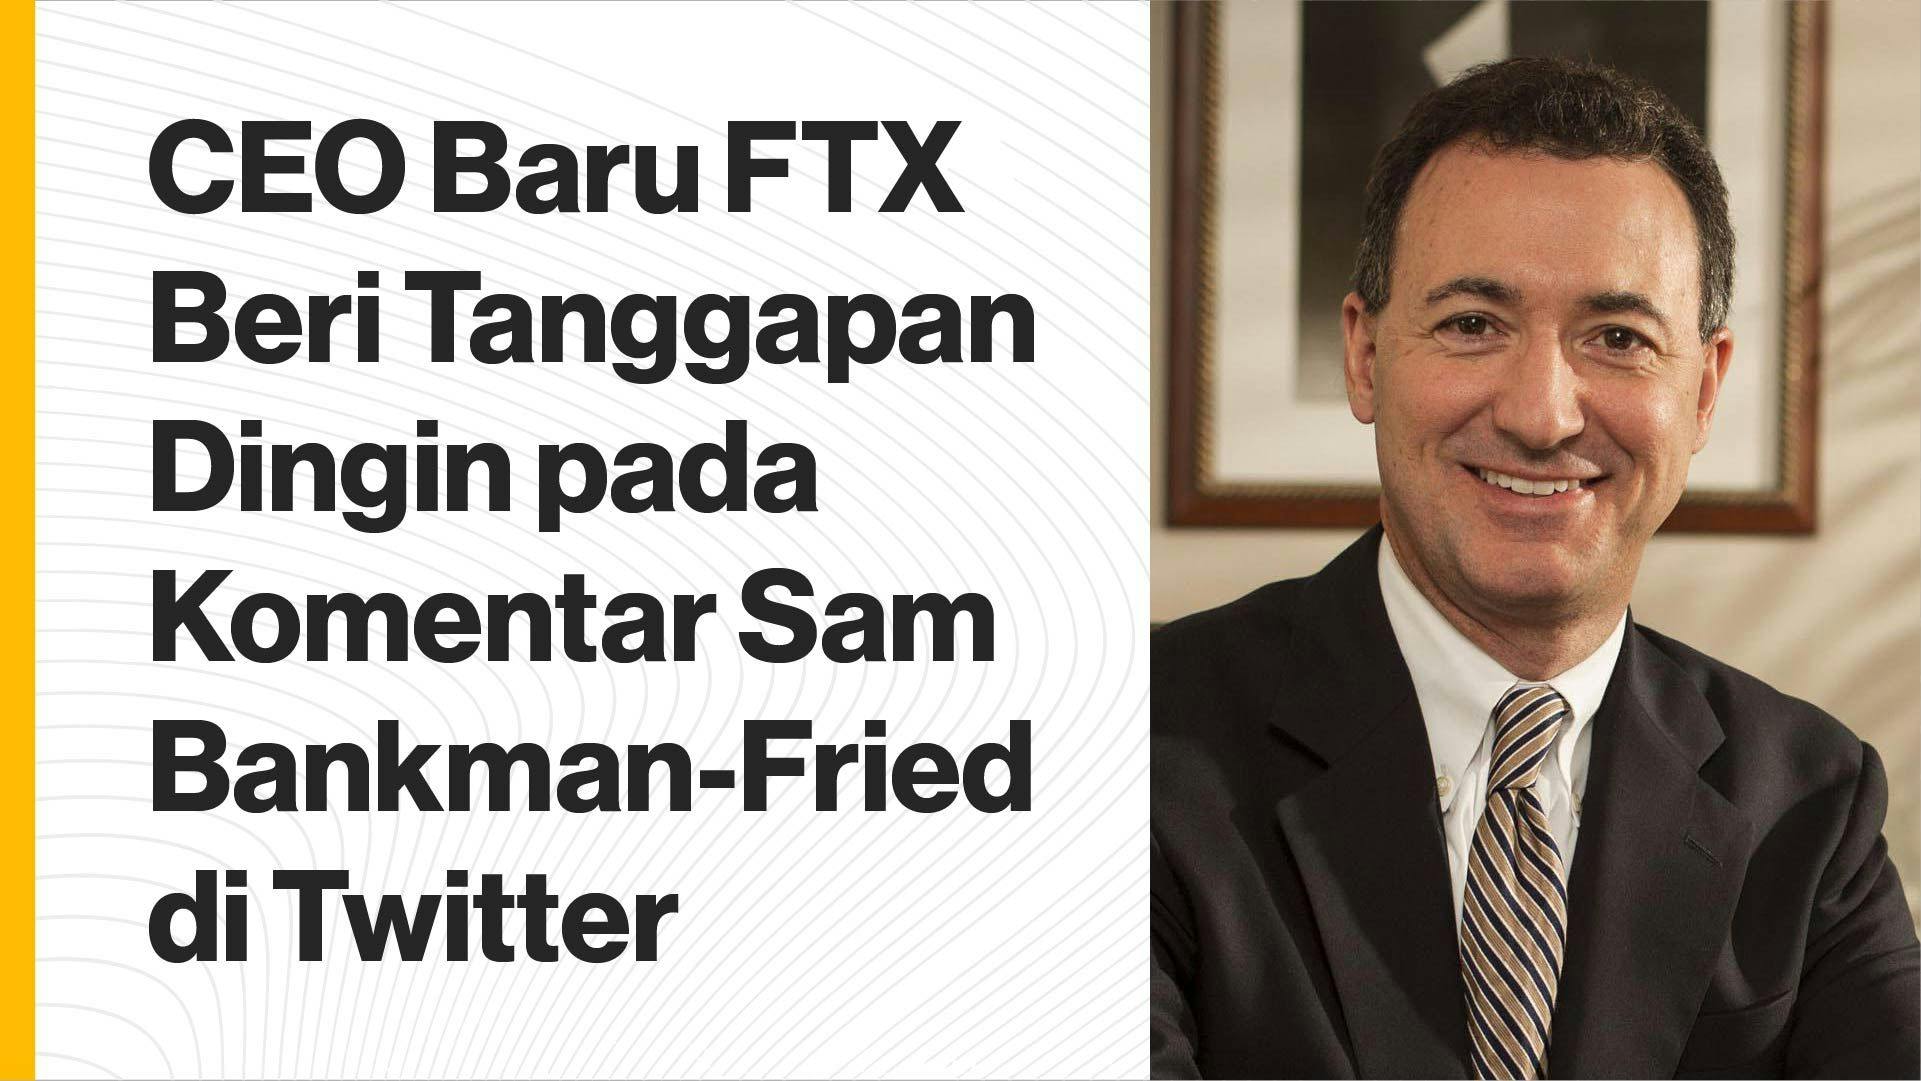 Sam Bankman-Fried terus membuat cuitan dan komentar secara sering di Twitter terkait apa yang menyebabkan keruntuhan FTX. (Foto CDI)